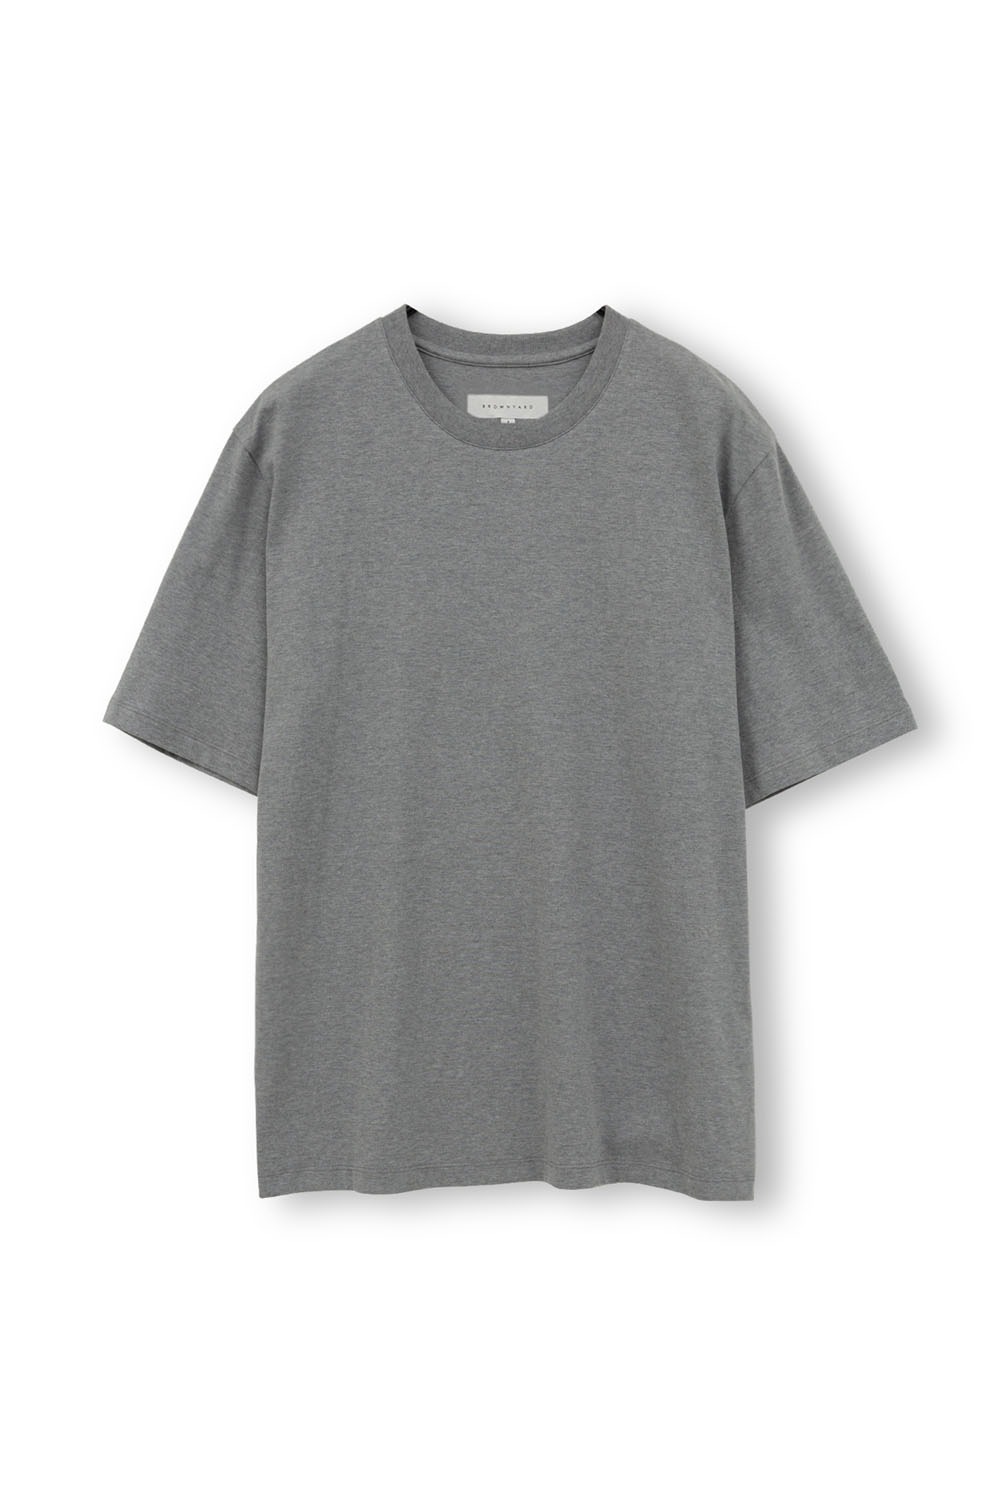 Essential T Shirt-Grey